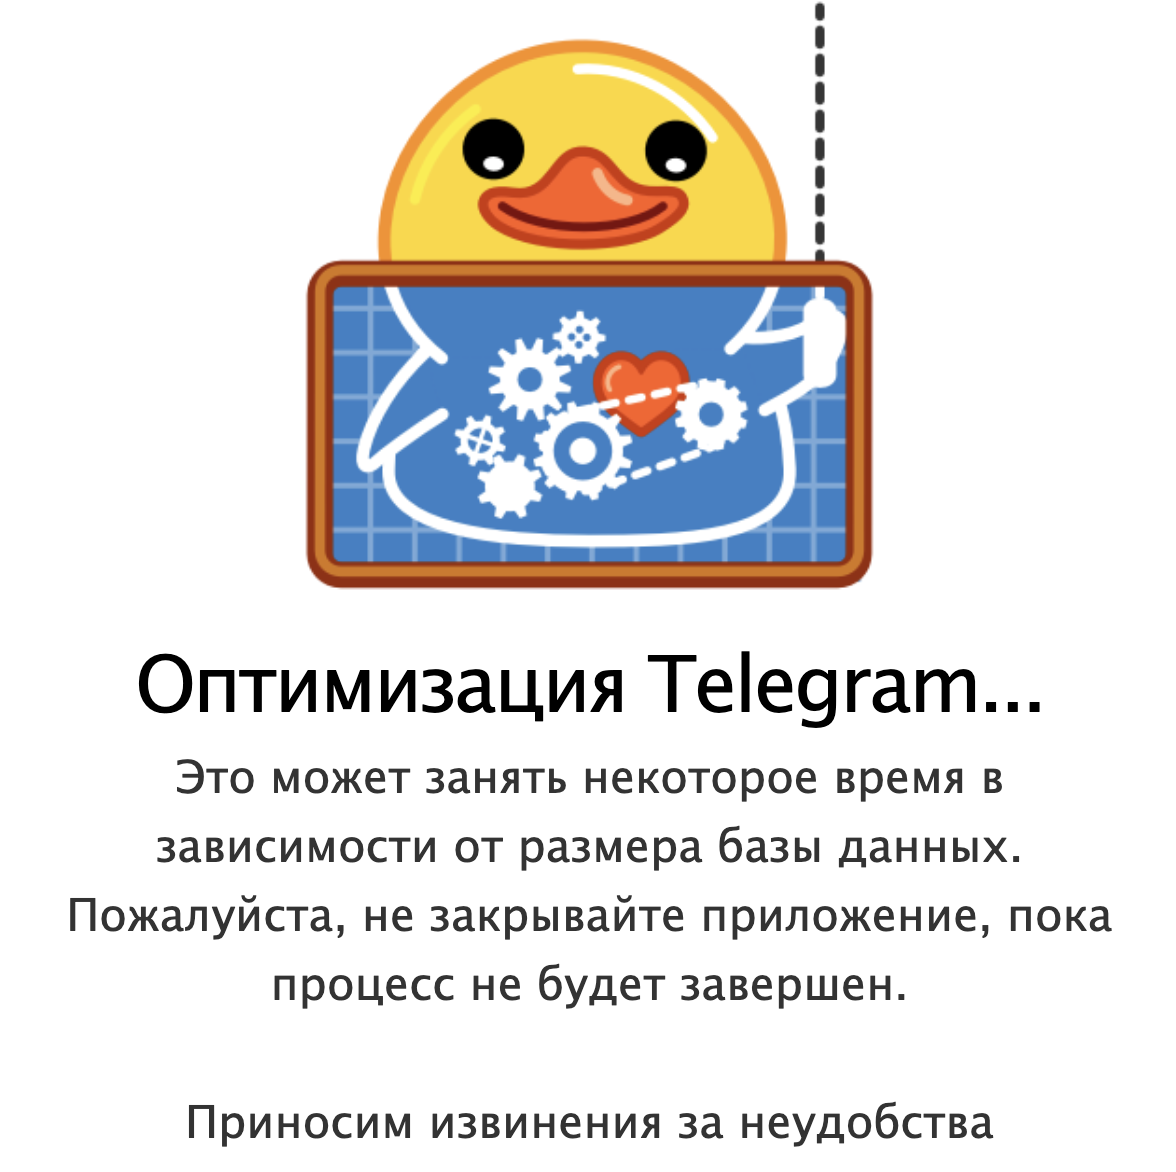 Языки в телеграмме прикольные скачать фото 30